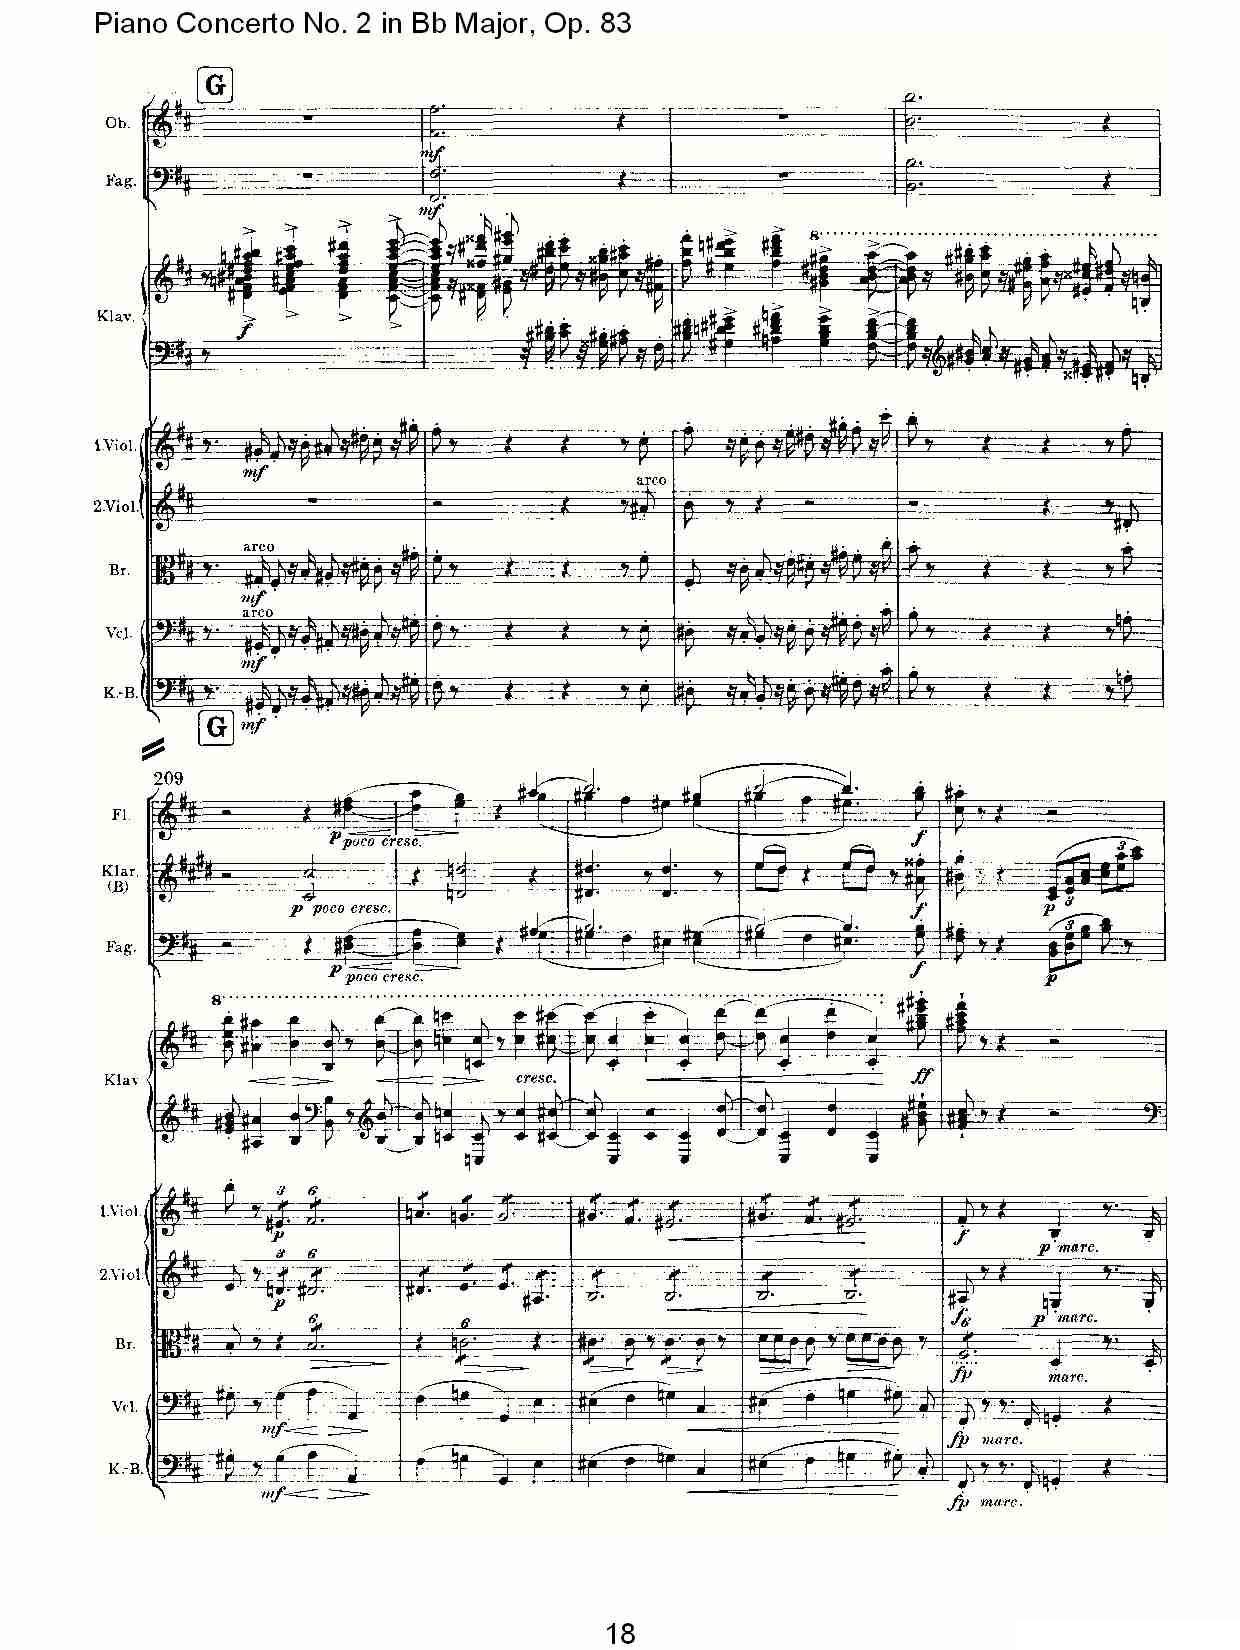 Bb大调钢琴第二协奏曲, Op.83第一乐章（一）钢琴曲谱（图19）